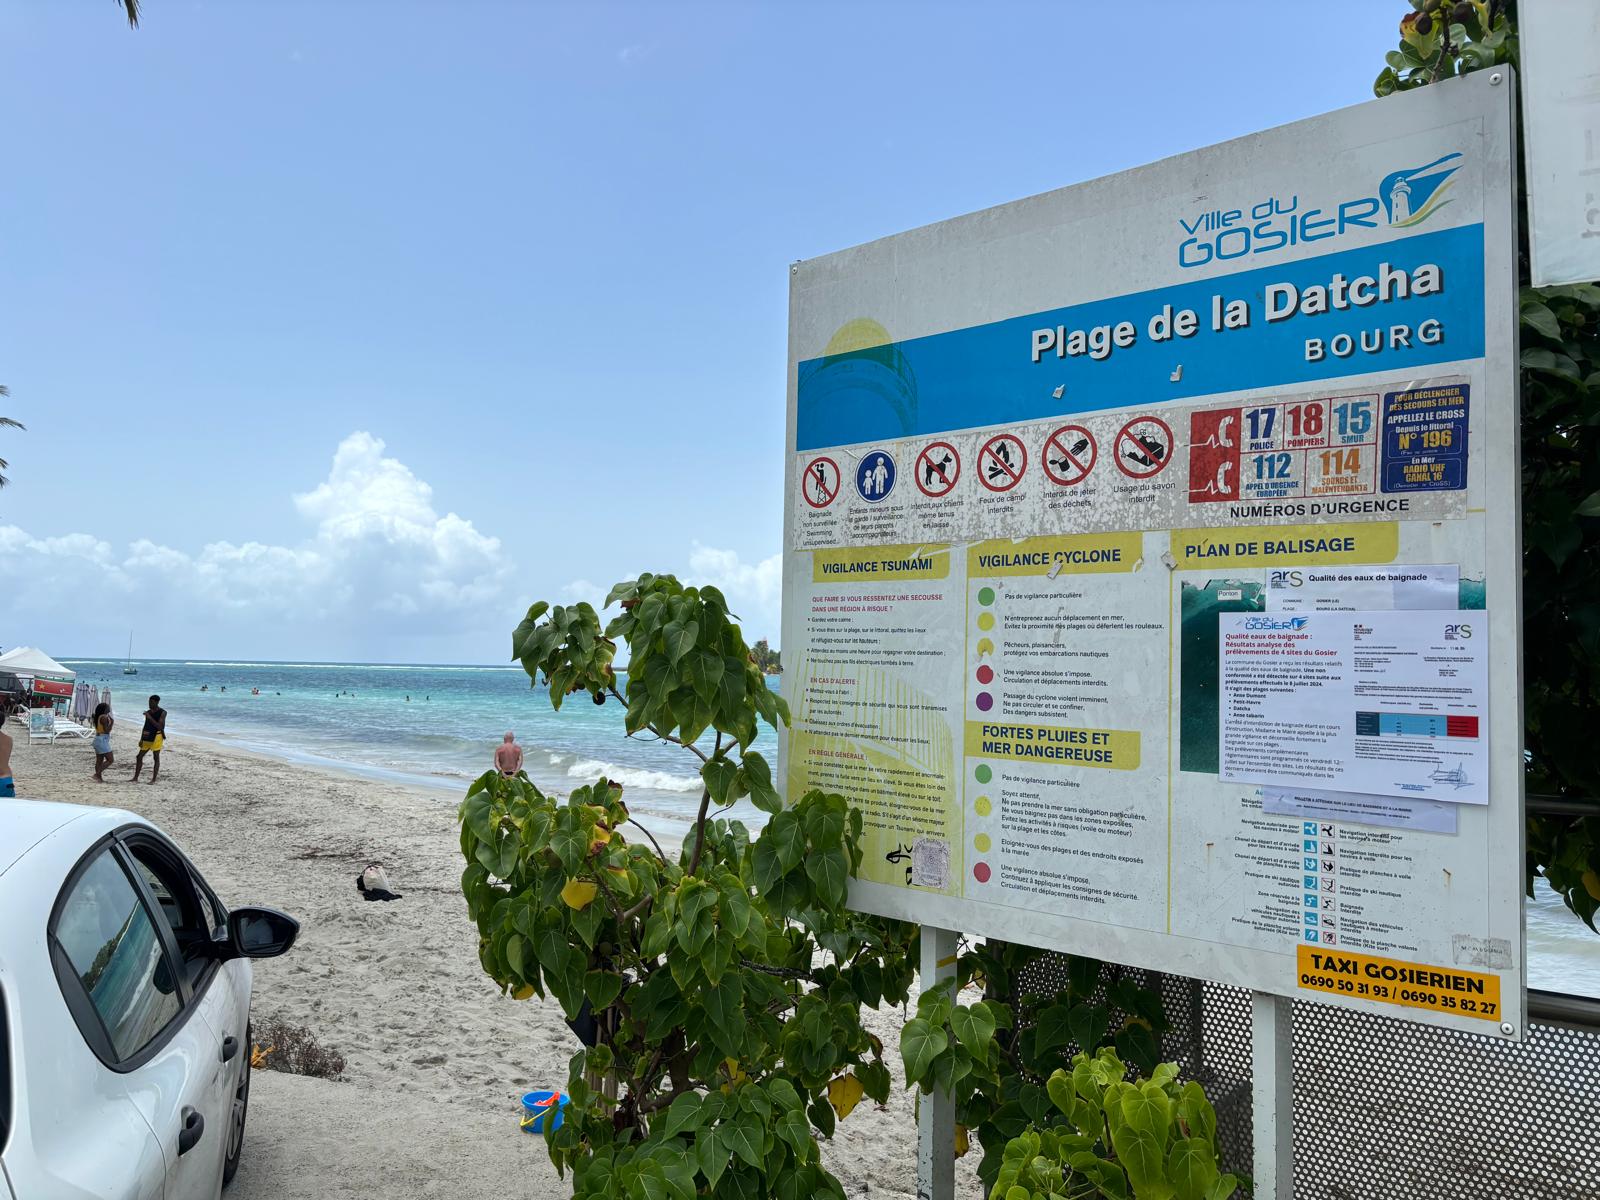     Quatre plages du Gosier interdites à la baignade à cause d’une contamination fécale

